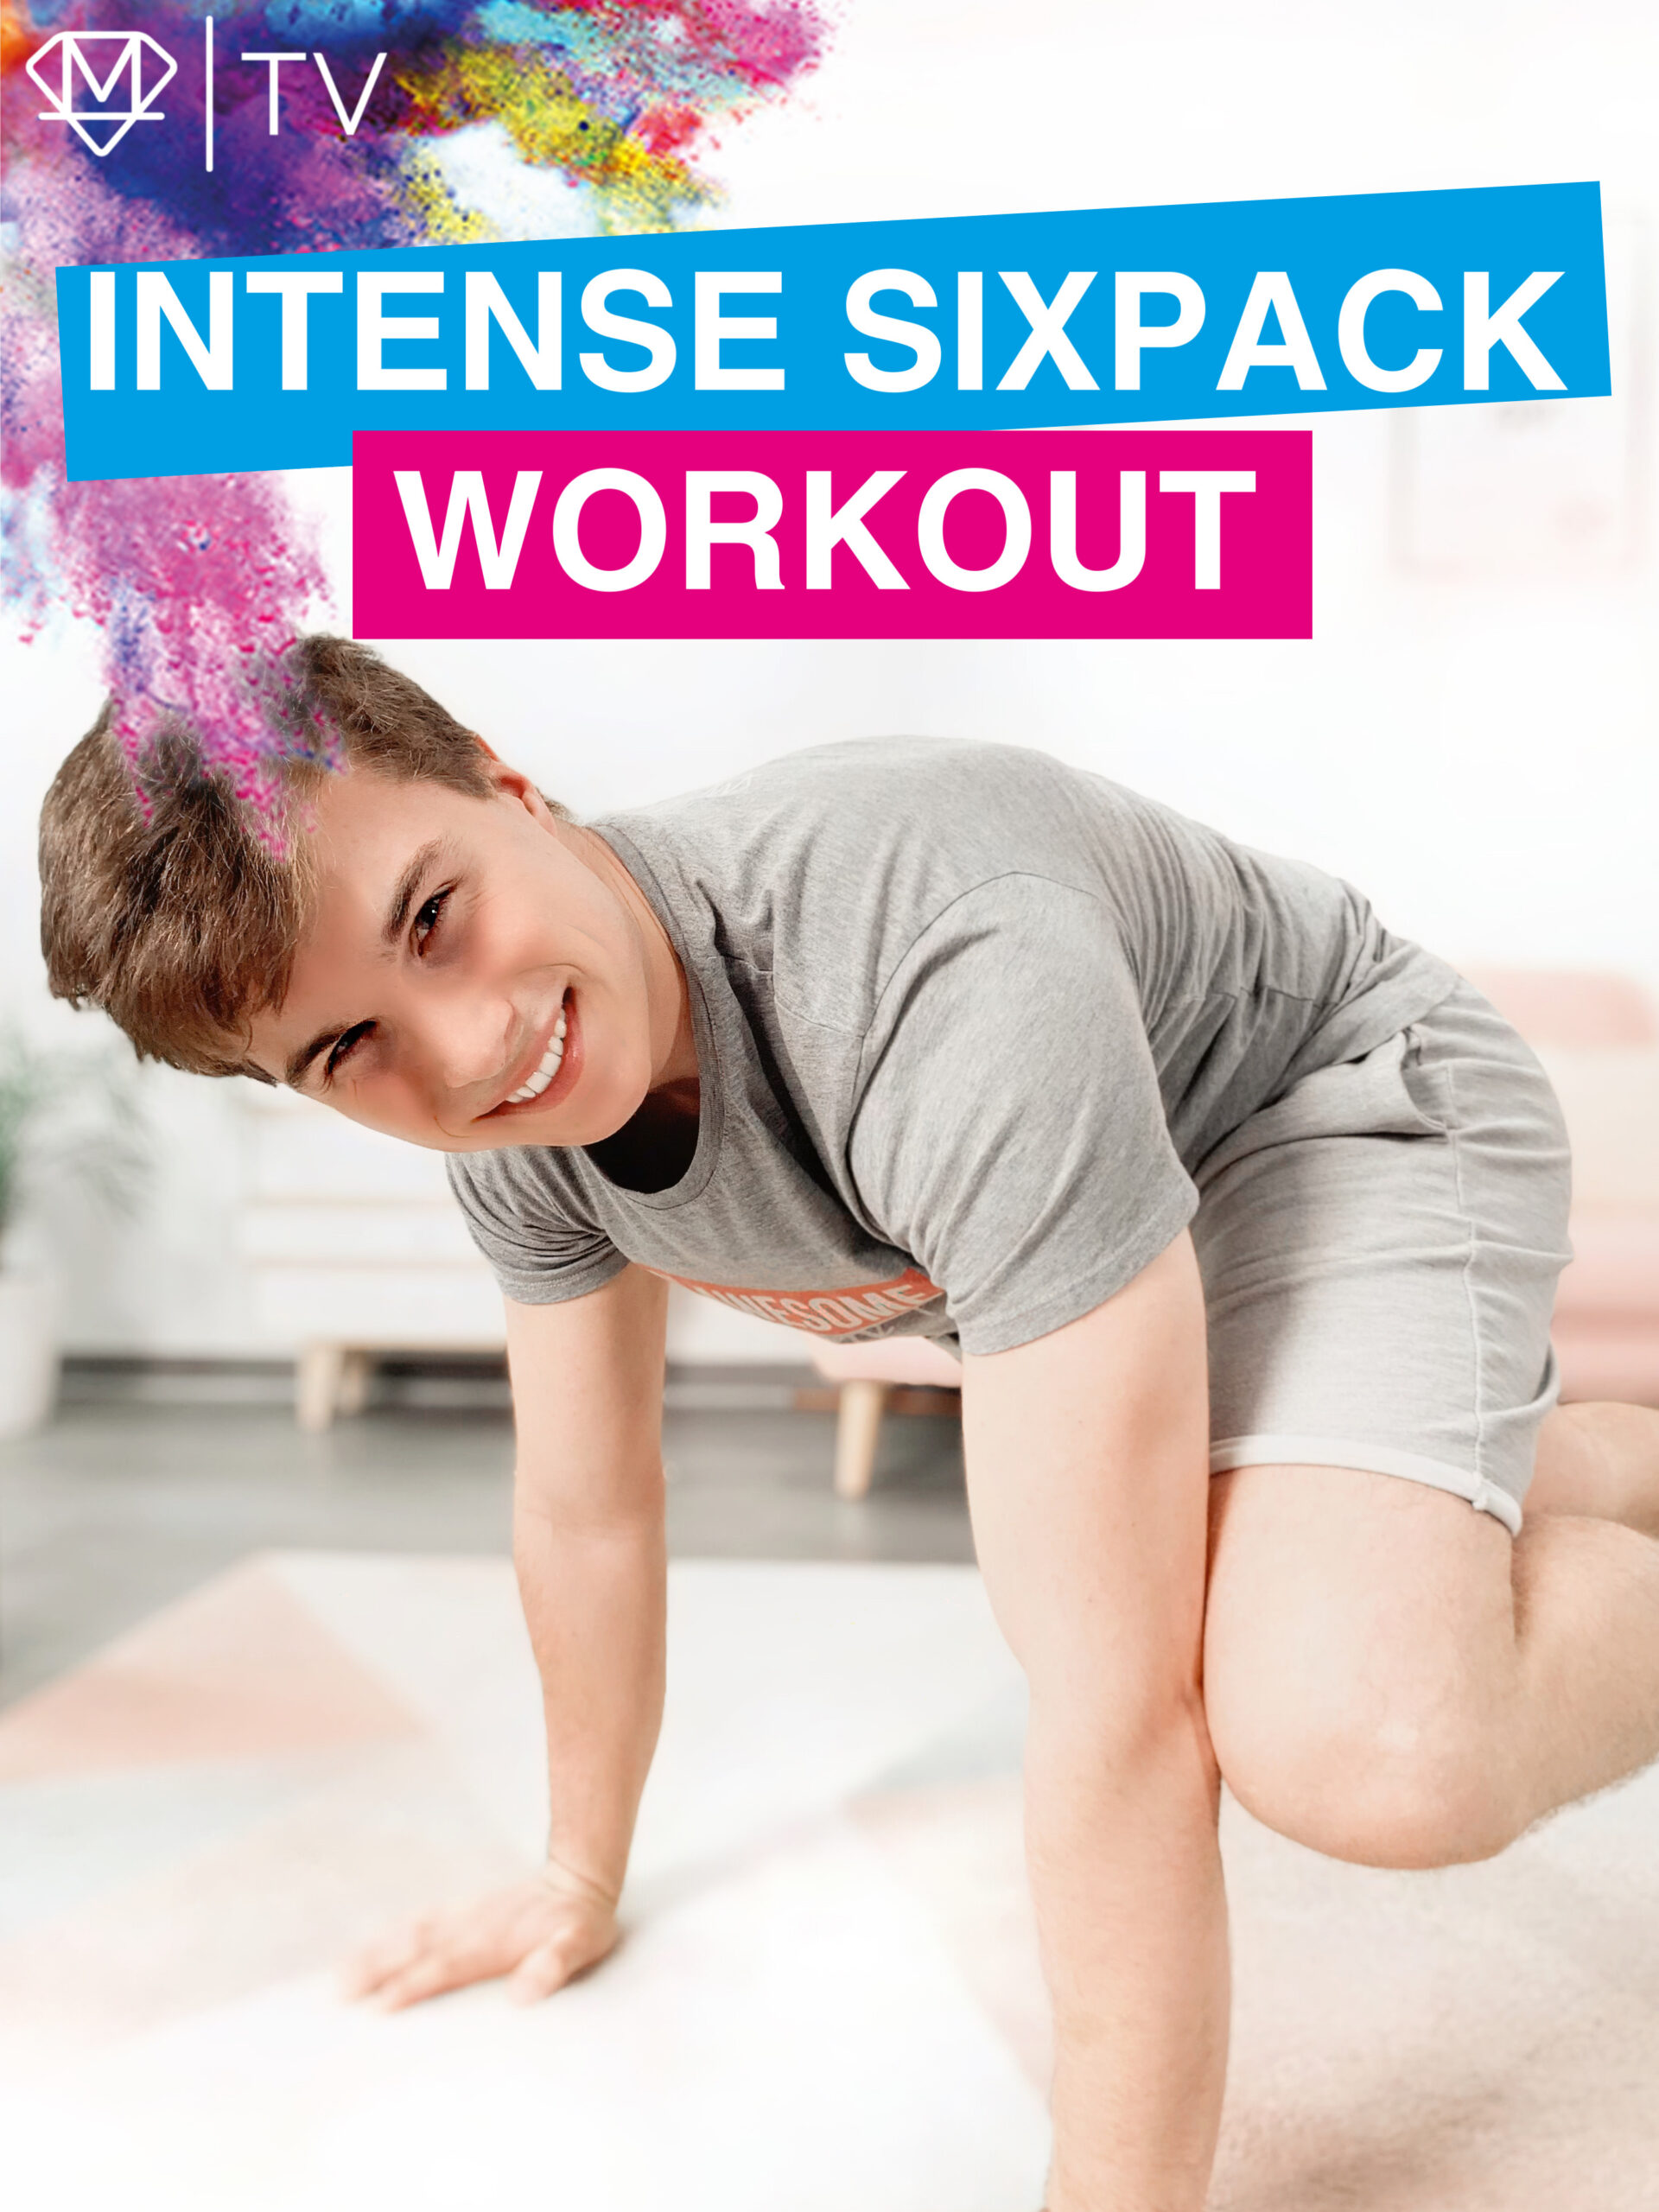 Intense Sixpack Workout